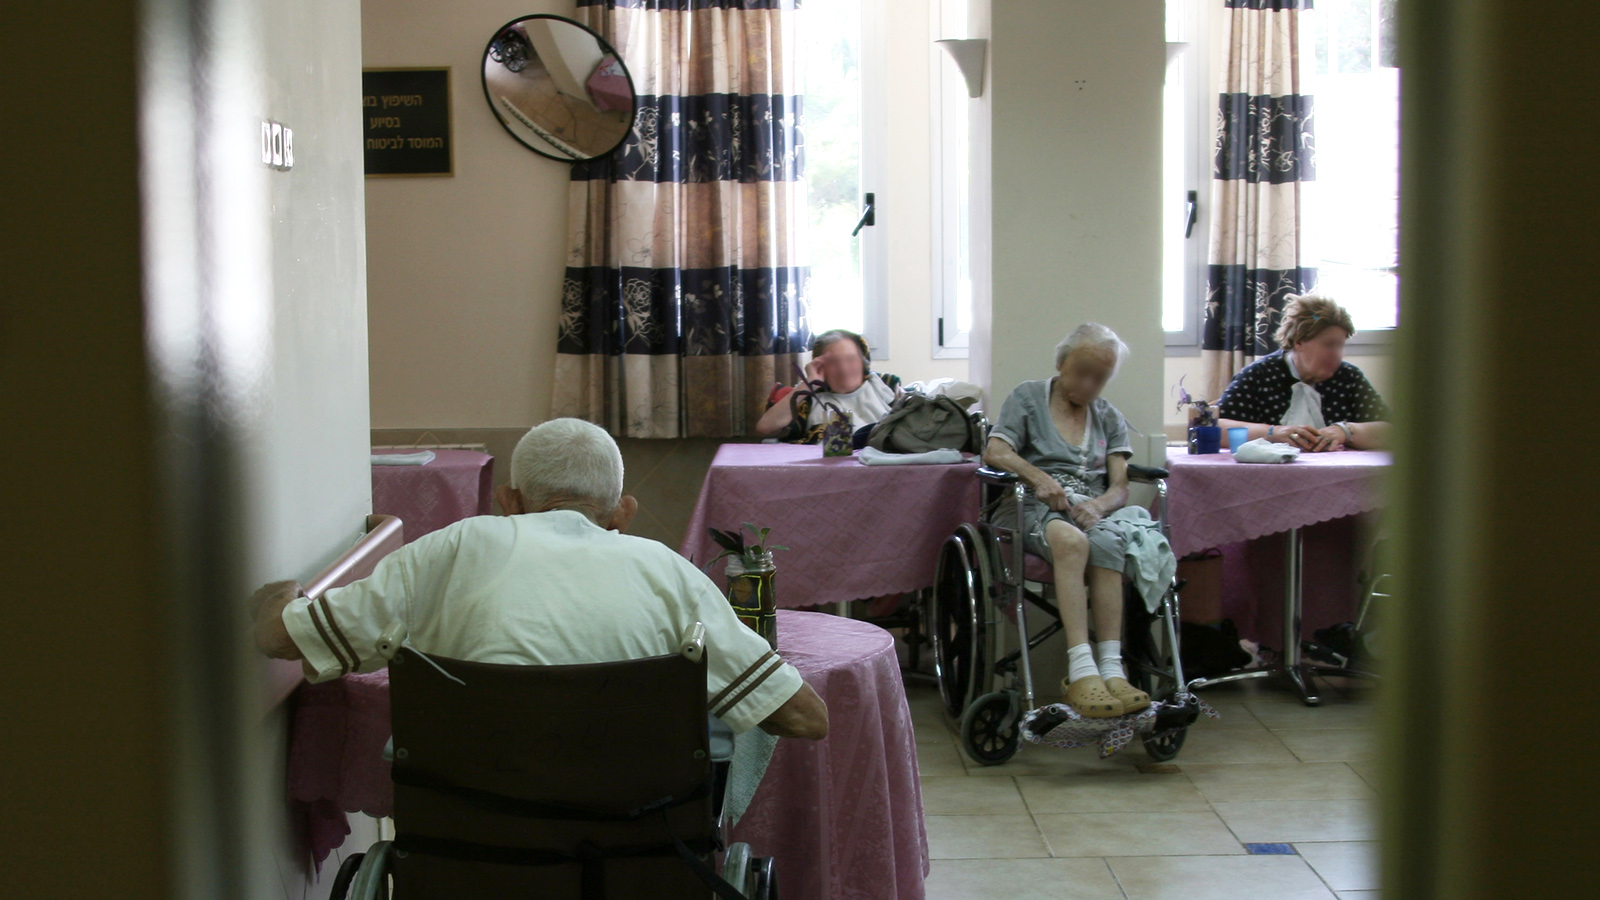 كبار السن في دار لرعاية المسنين ، ليس للمصورين صلة بالقصة (الصورة: آنا كابلان / flash90).